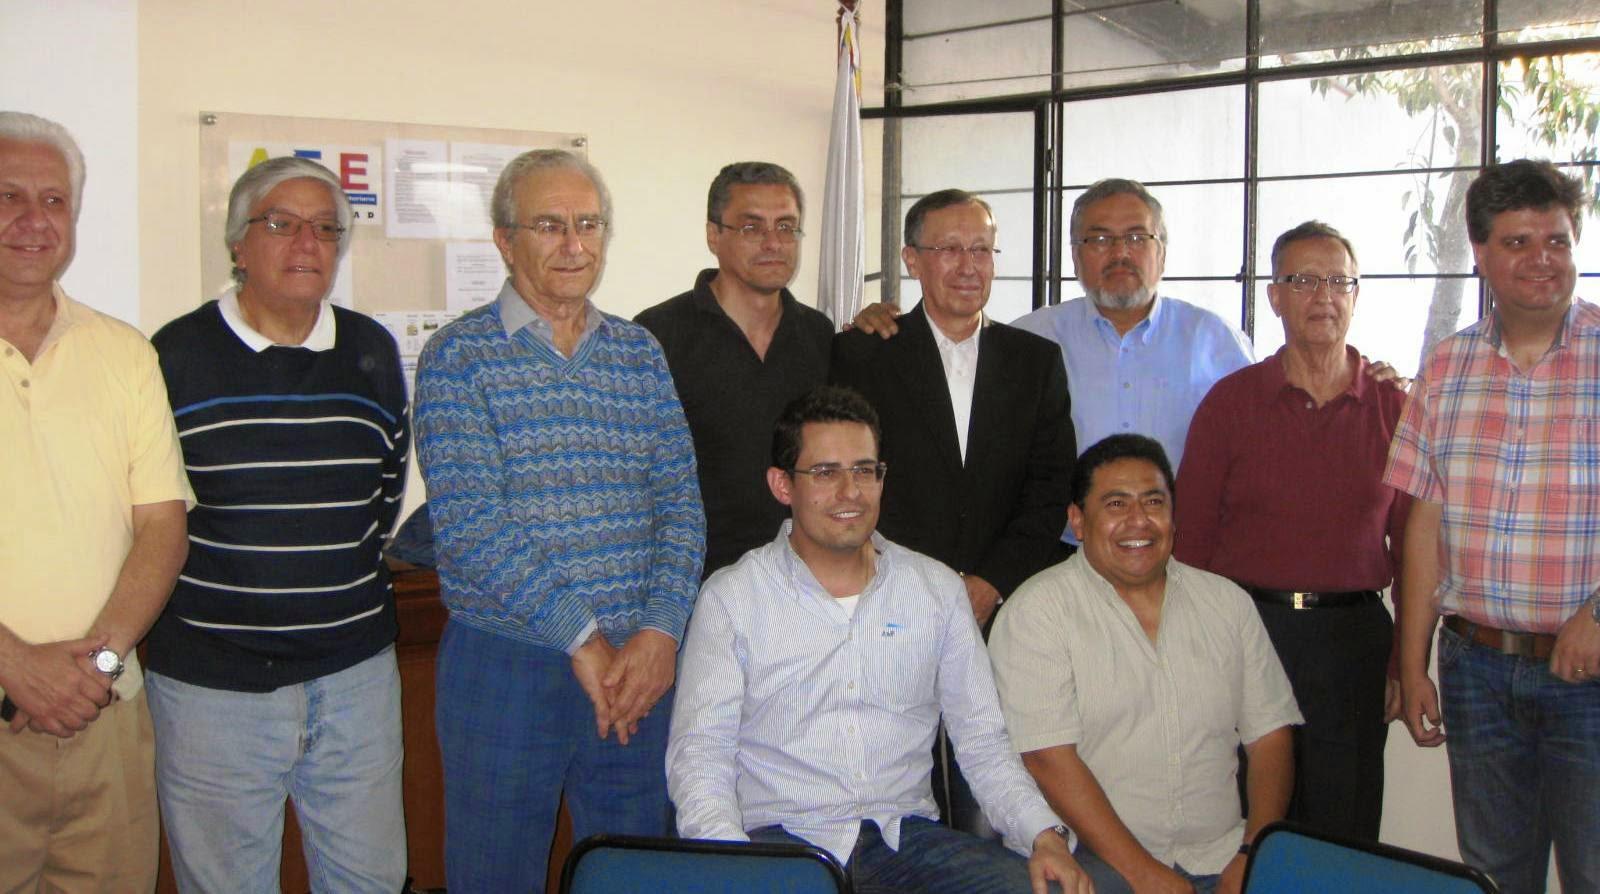 Para ocupar los cargos de Secretario y Tesorero, la elección recayó en Juan Pablo Aguilar y Fabián Celín, respectivamente.